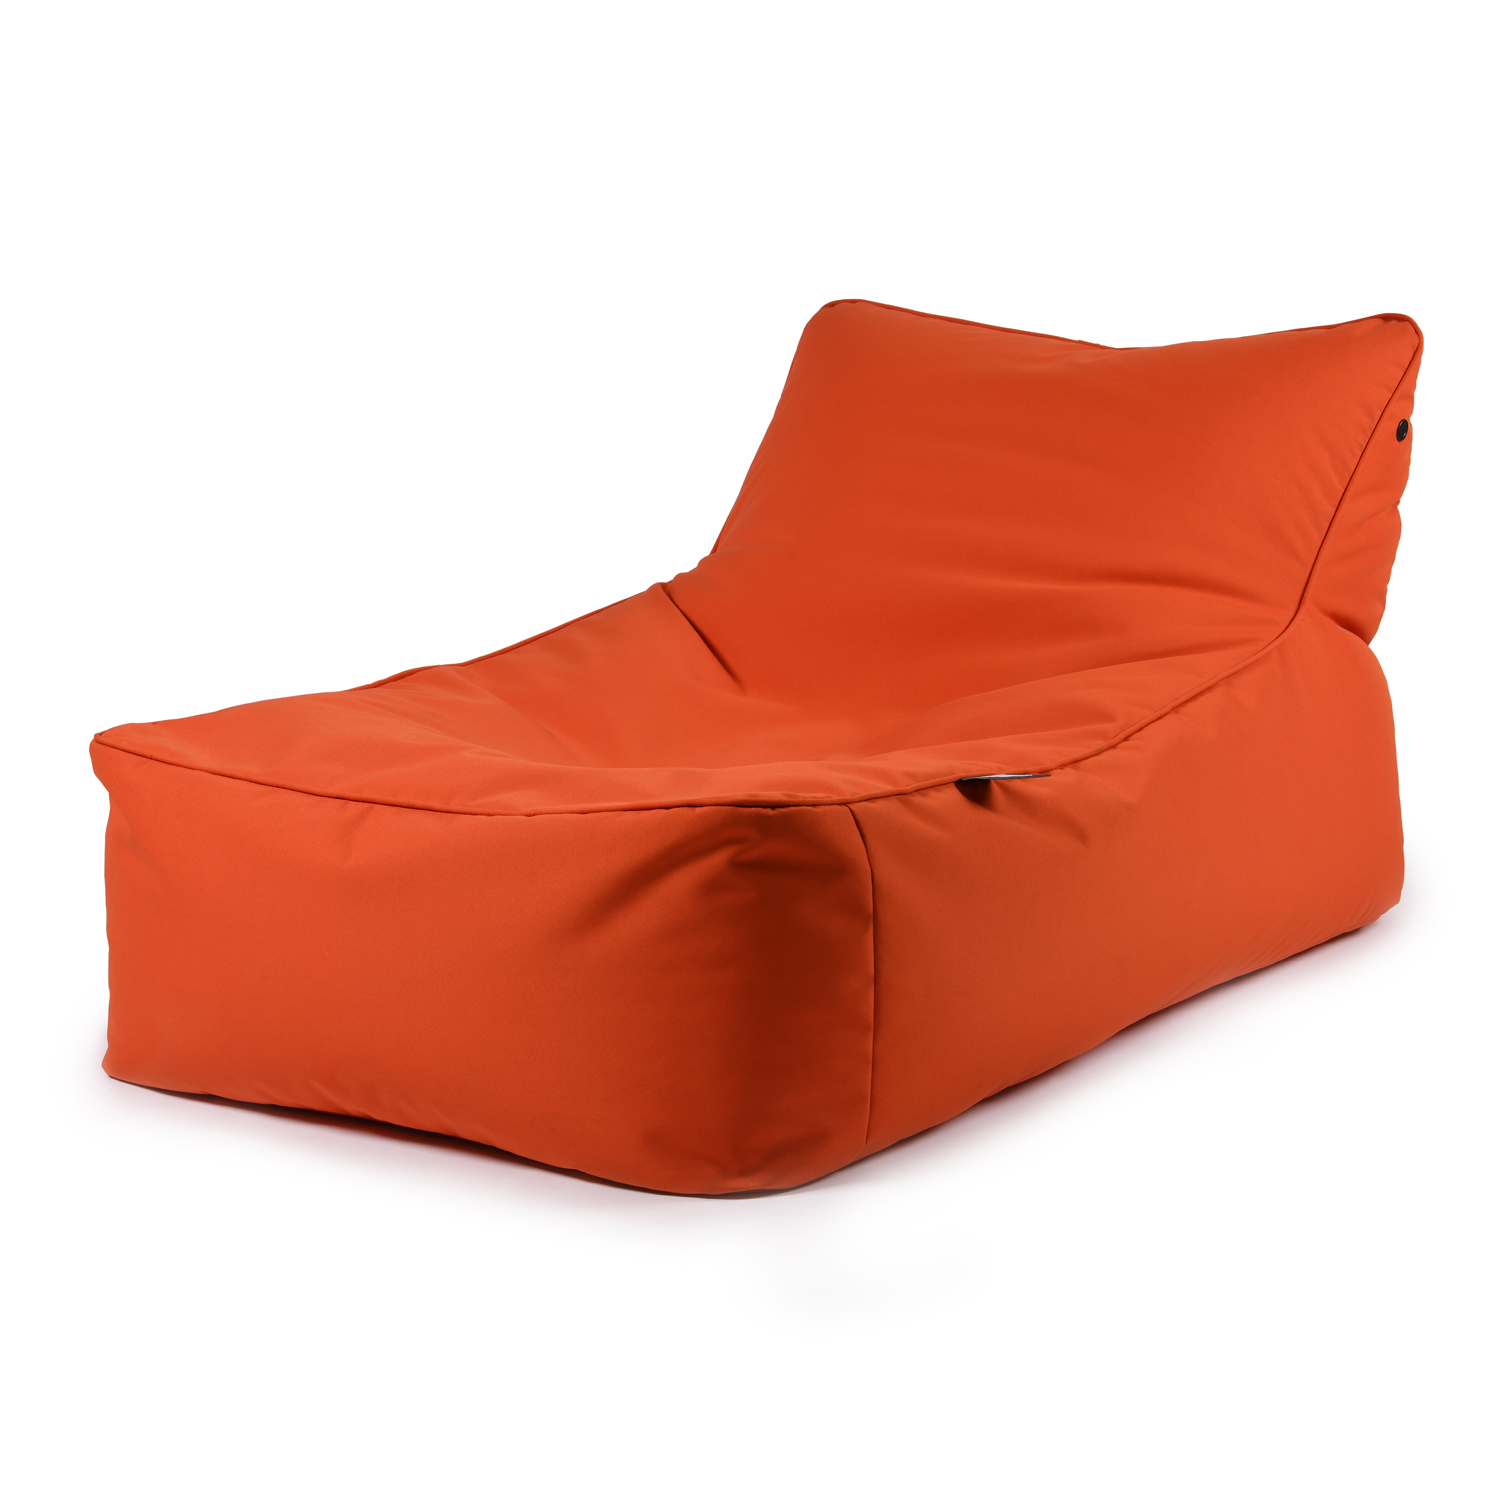 b-bed extreme lounging Sonnenliege Orange 65x80x120cm wasserabweisend UV-beständig